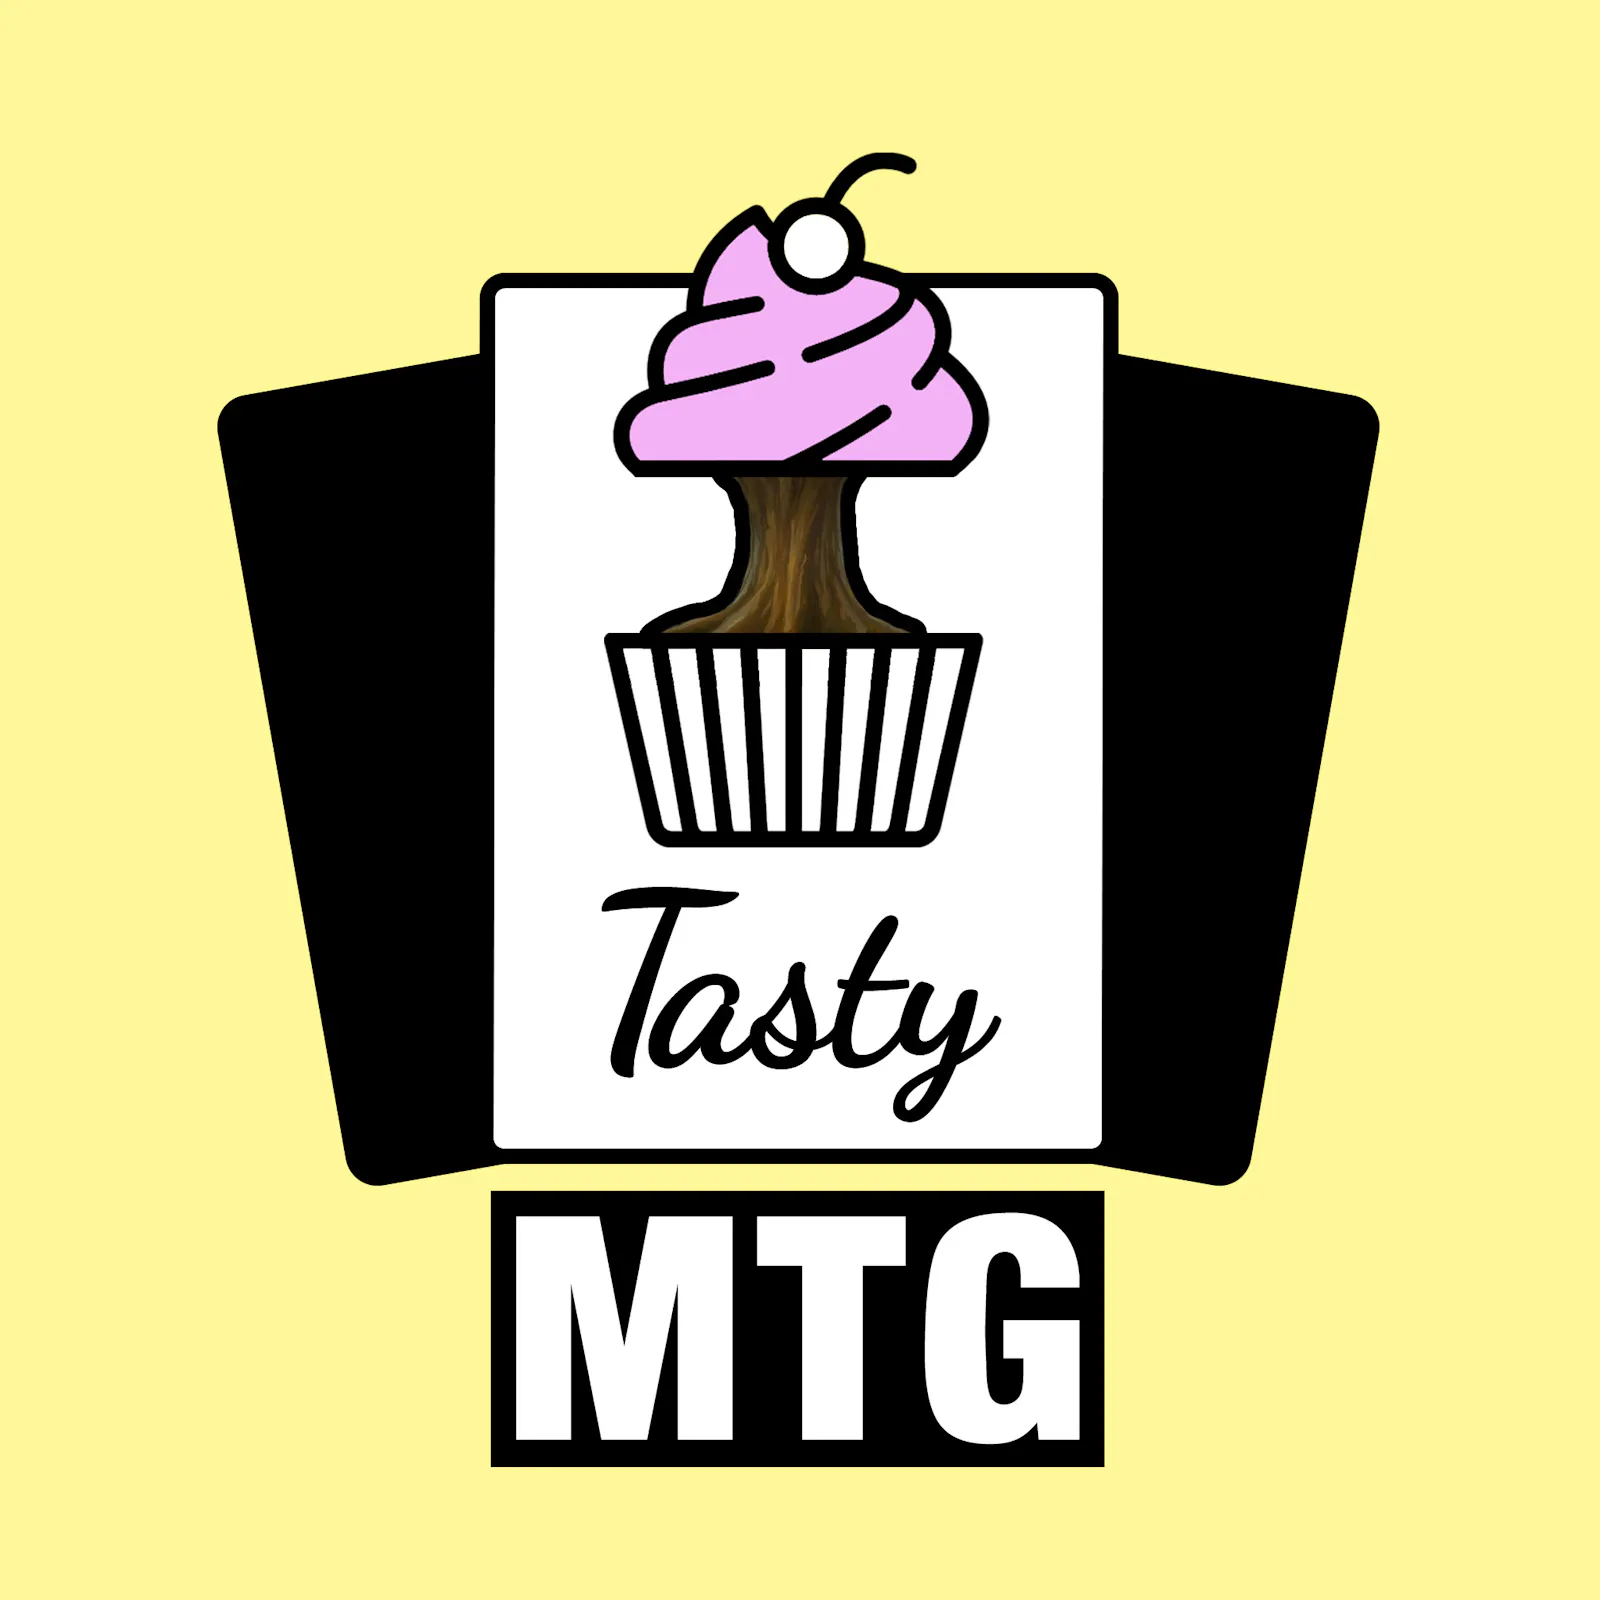 Coverbild der aktuellen Folge: Der Tasty-MTG-Cupcake ist der Weltenbaum